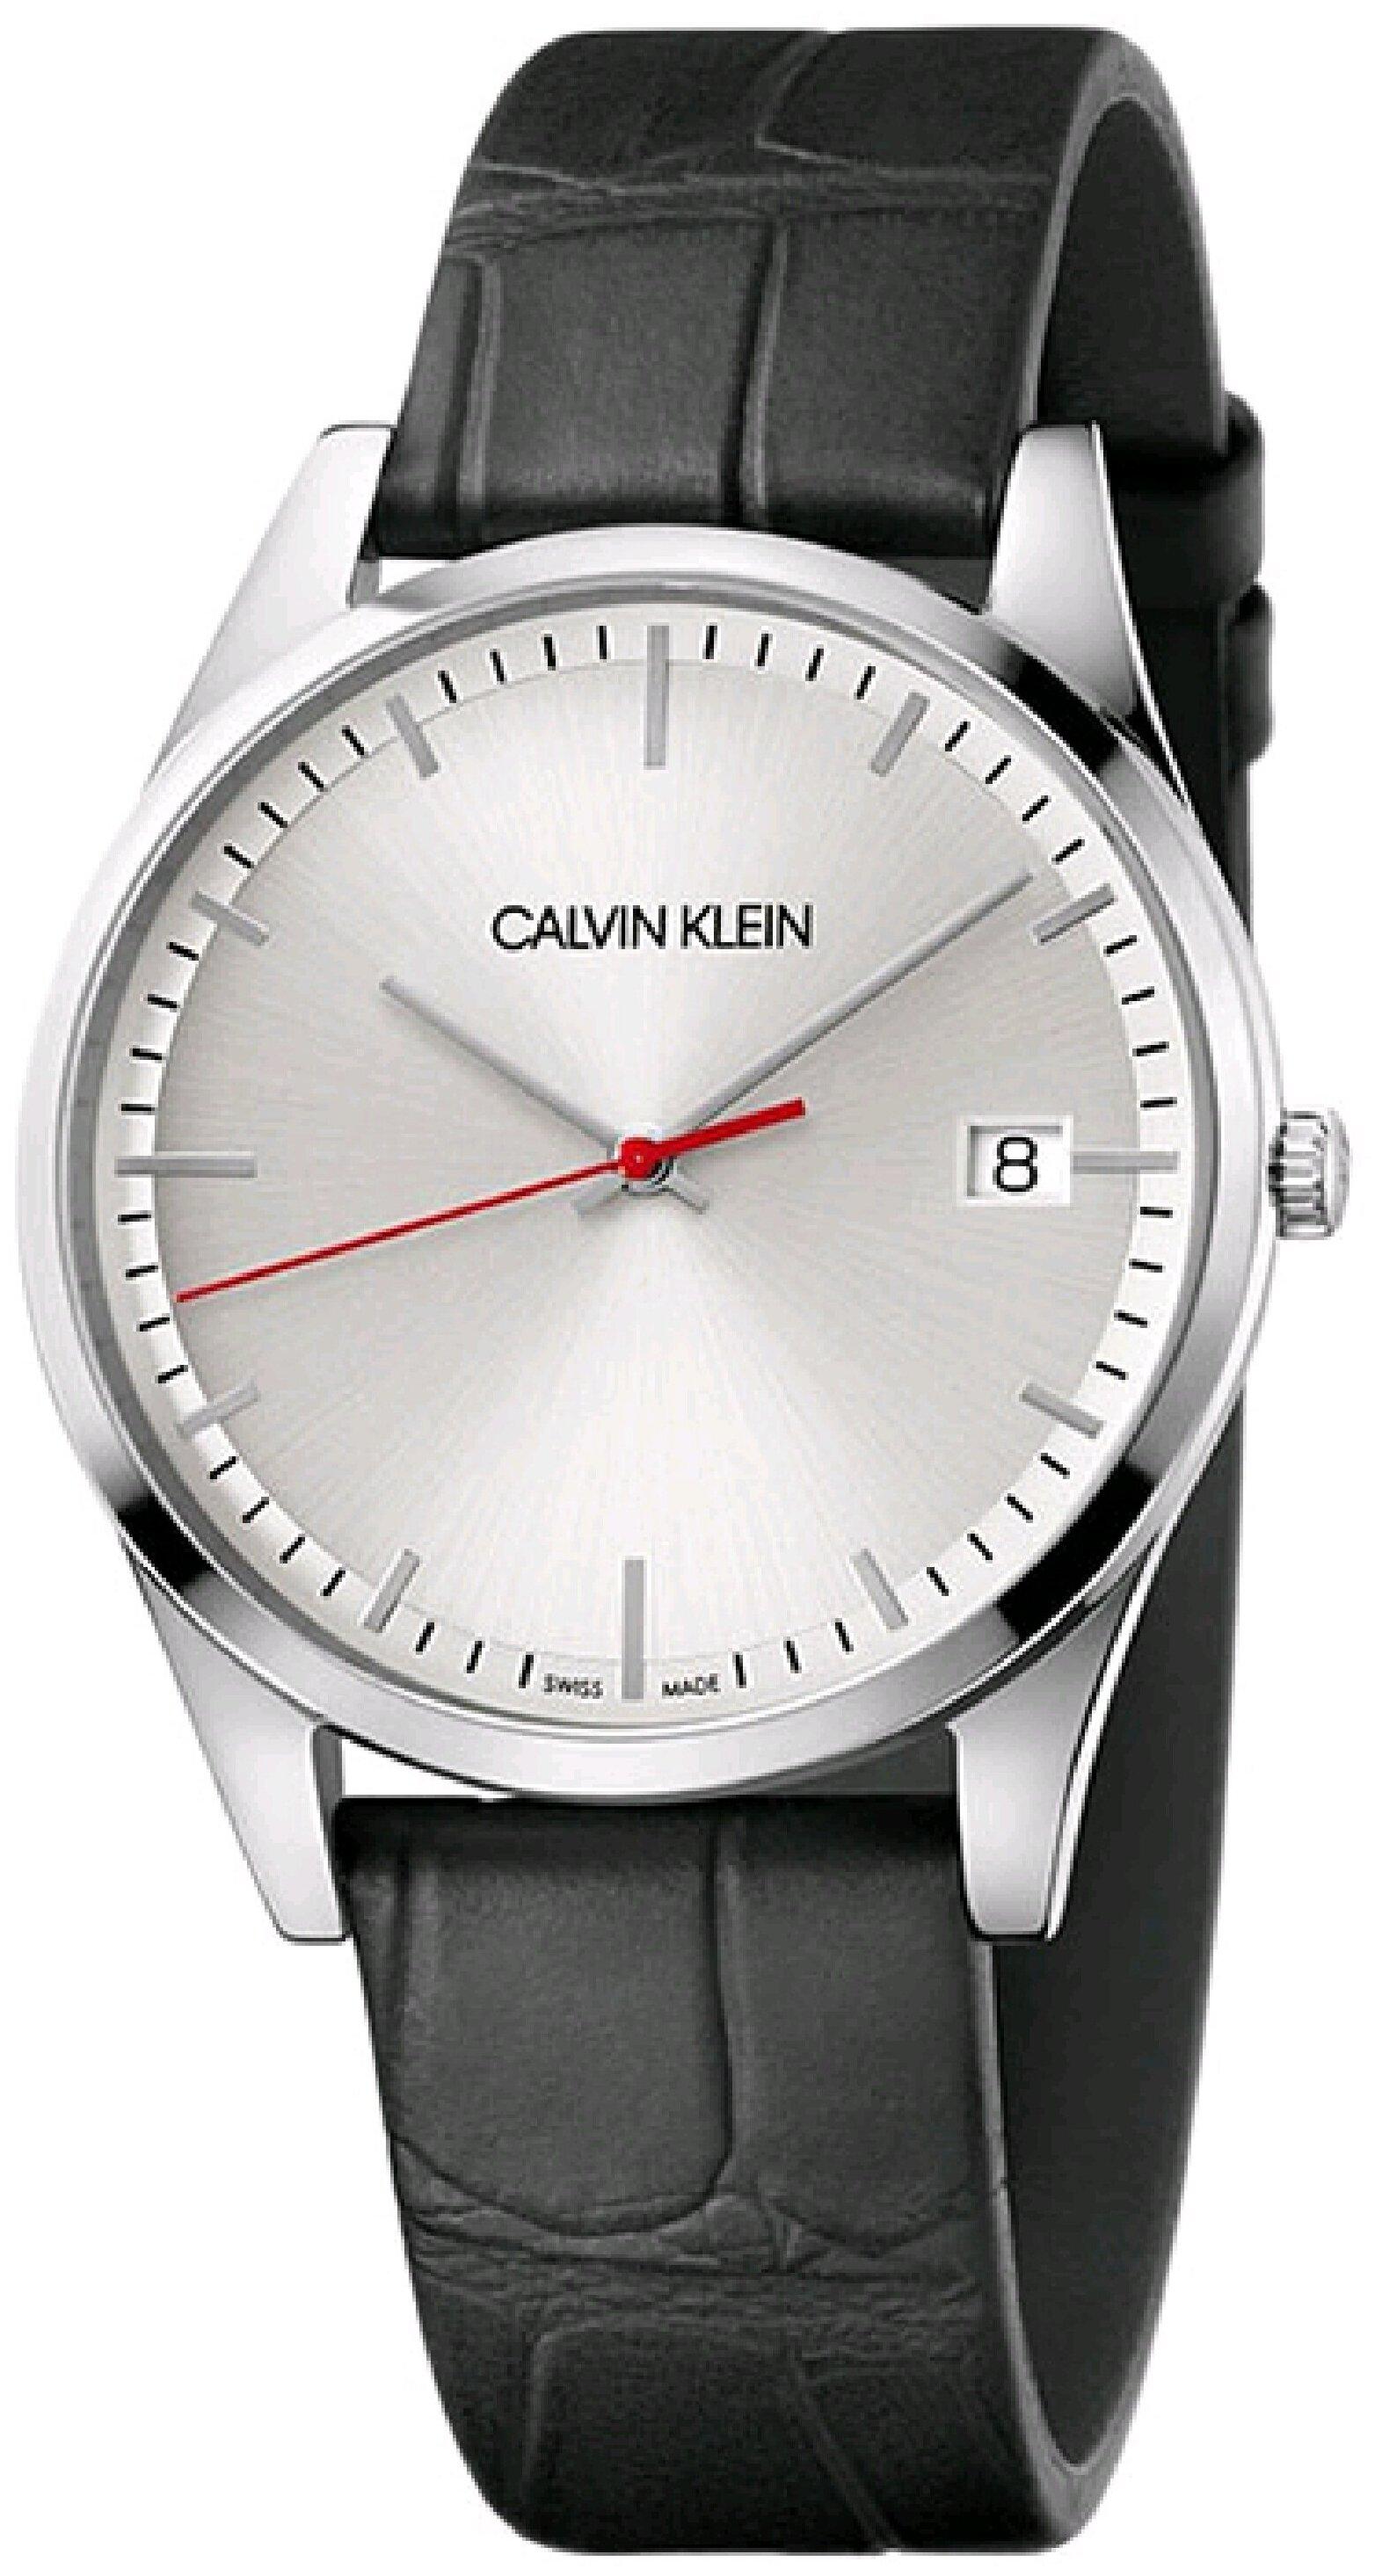 CALVIN KLEIN K4N211.C6